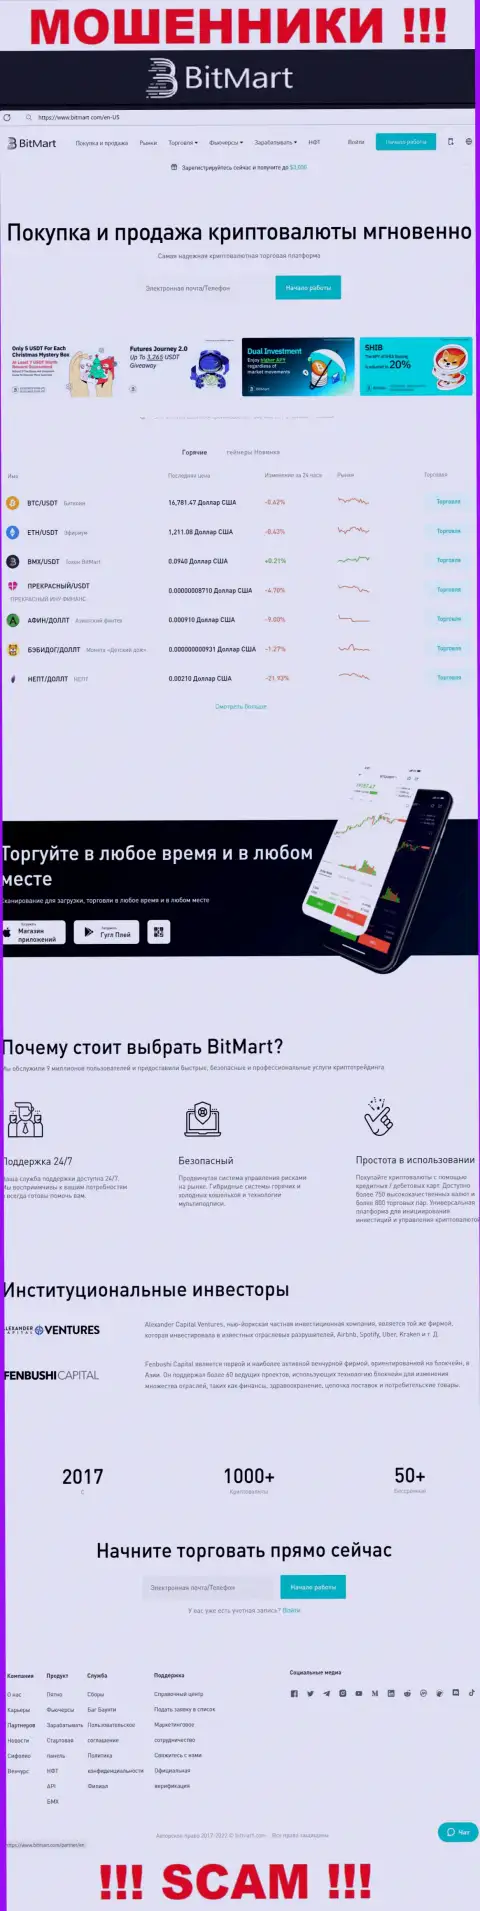 Вид официального web-сервиса мошеннической компании BitMart